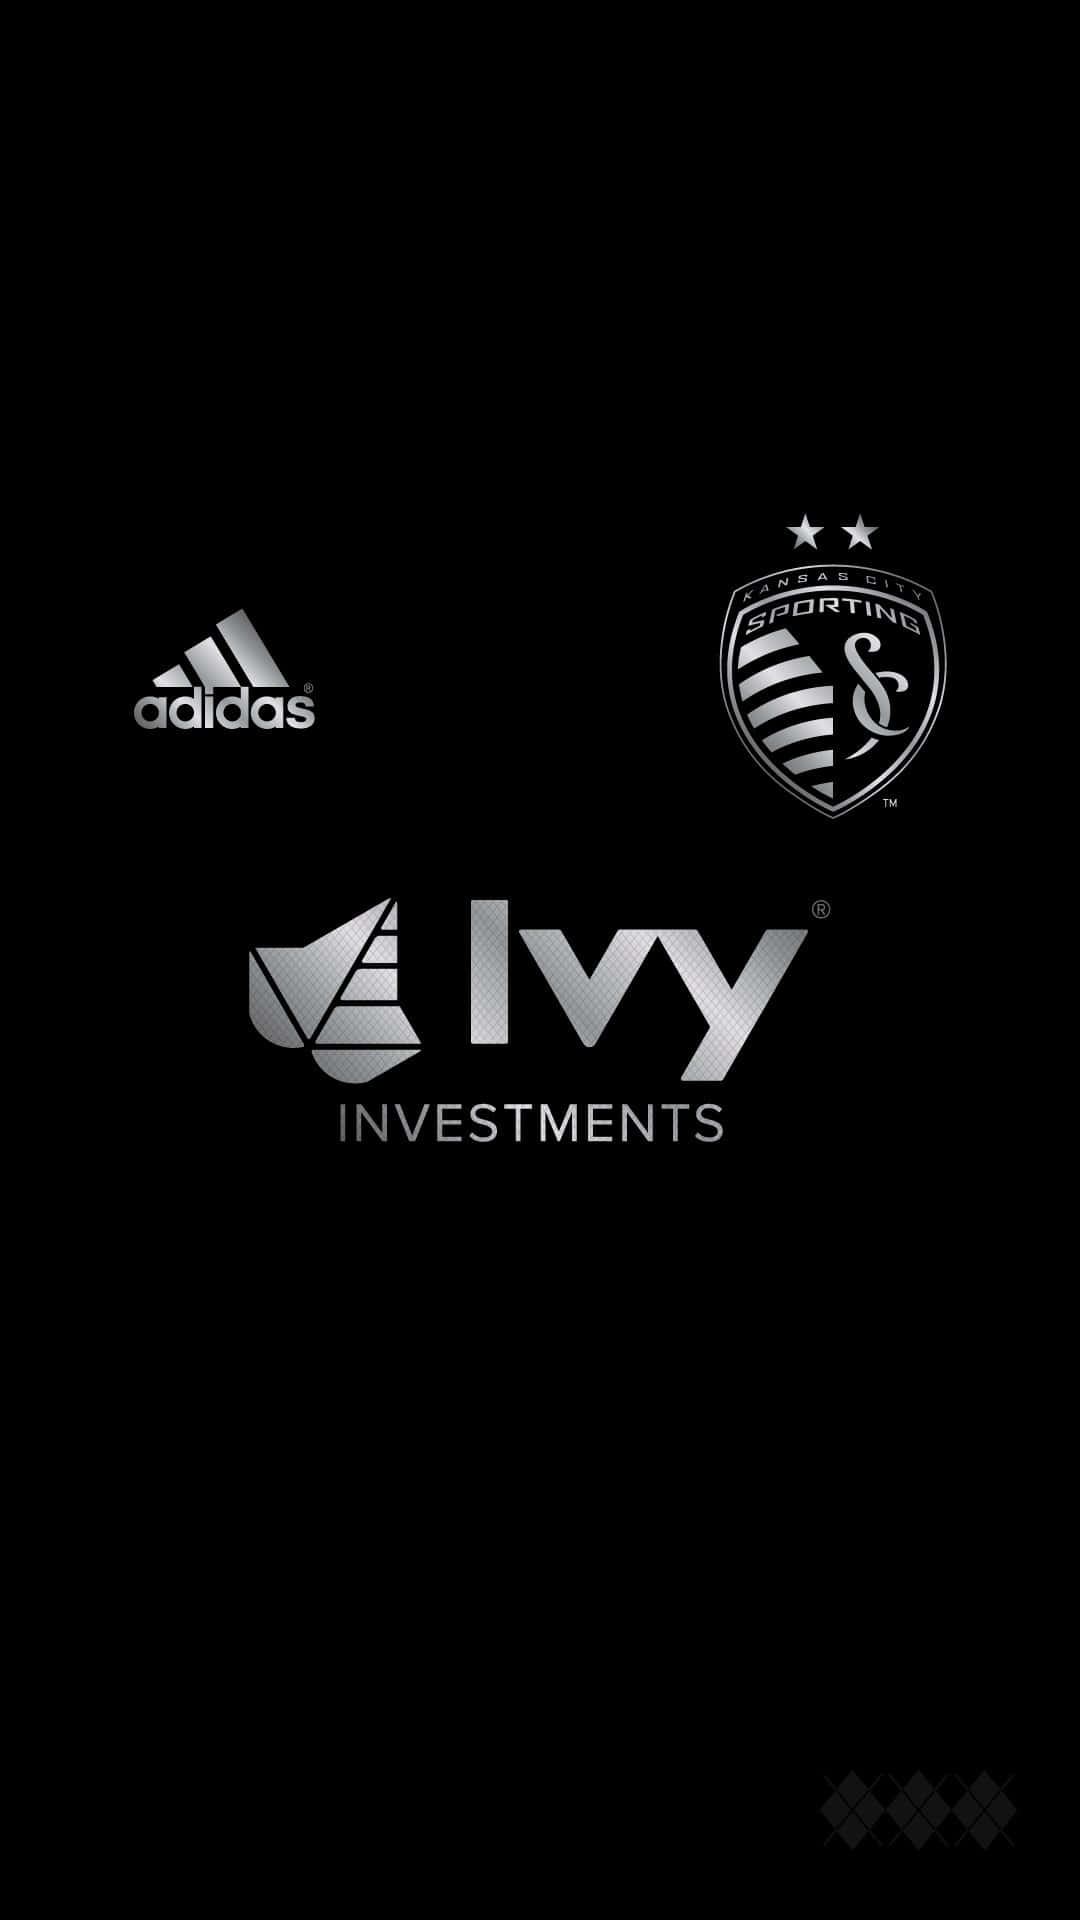 Logotipode Sporting Kansas City Con Adidas E Ivy Investments. Fondo de pantalla